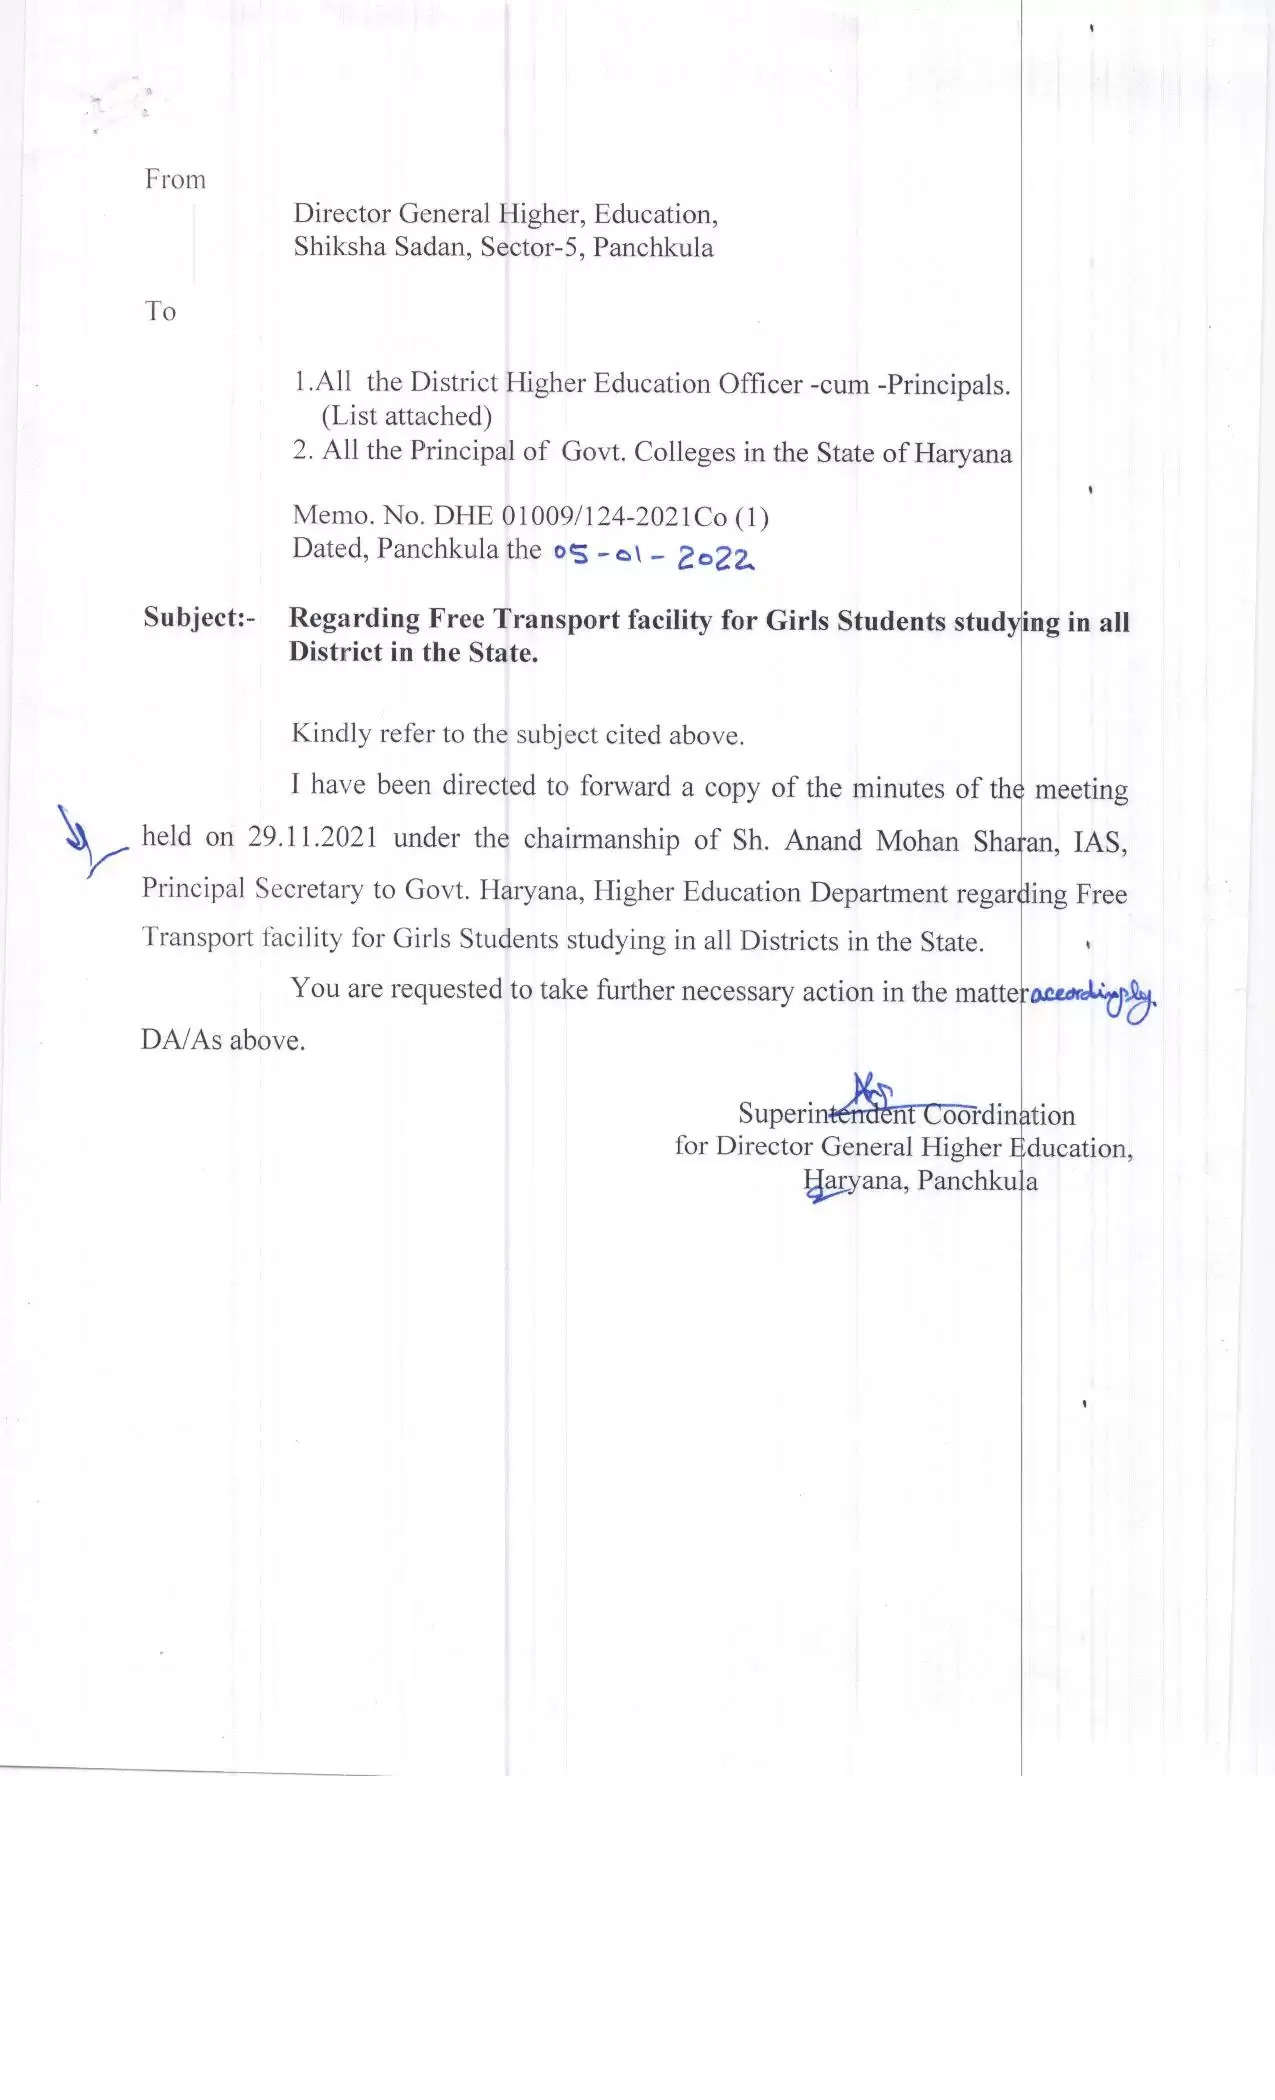 हरियाणा के सरकारी कॉलेजों में पढ़ने वाली छात्राओं के लिए खुशखबरी, सरकार ने किया ये ऐलान